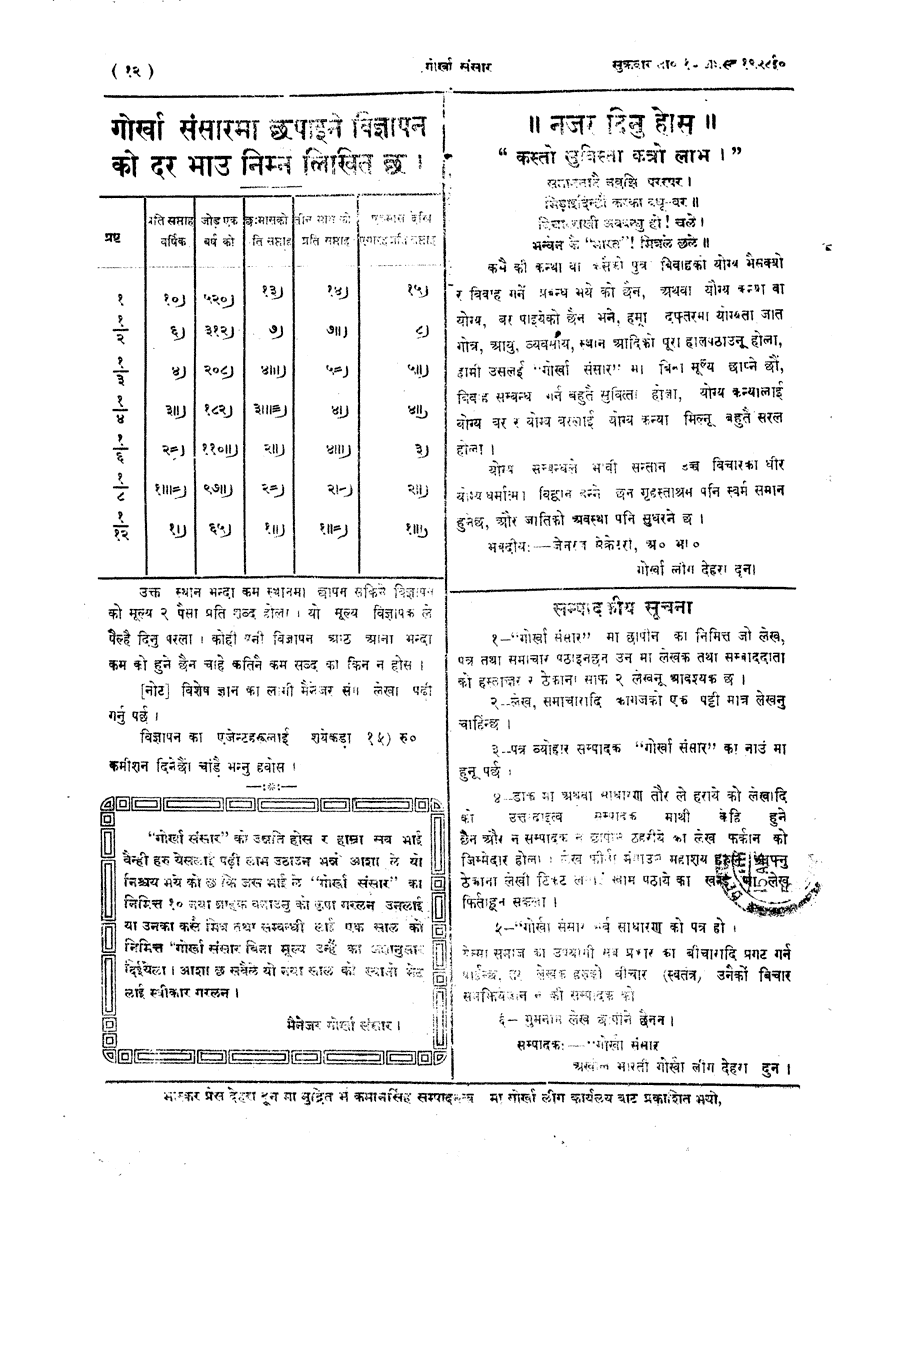 Gorkha Sansar, 10 Aug 1928, page 12